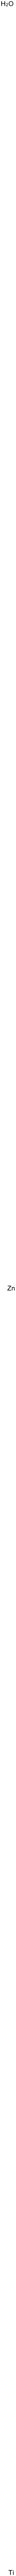 Titanium zinc oxide  Struktur